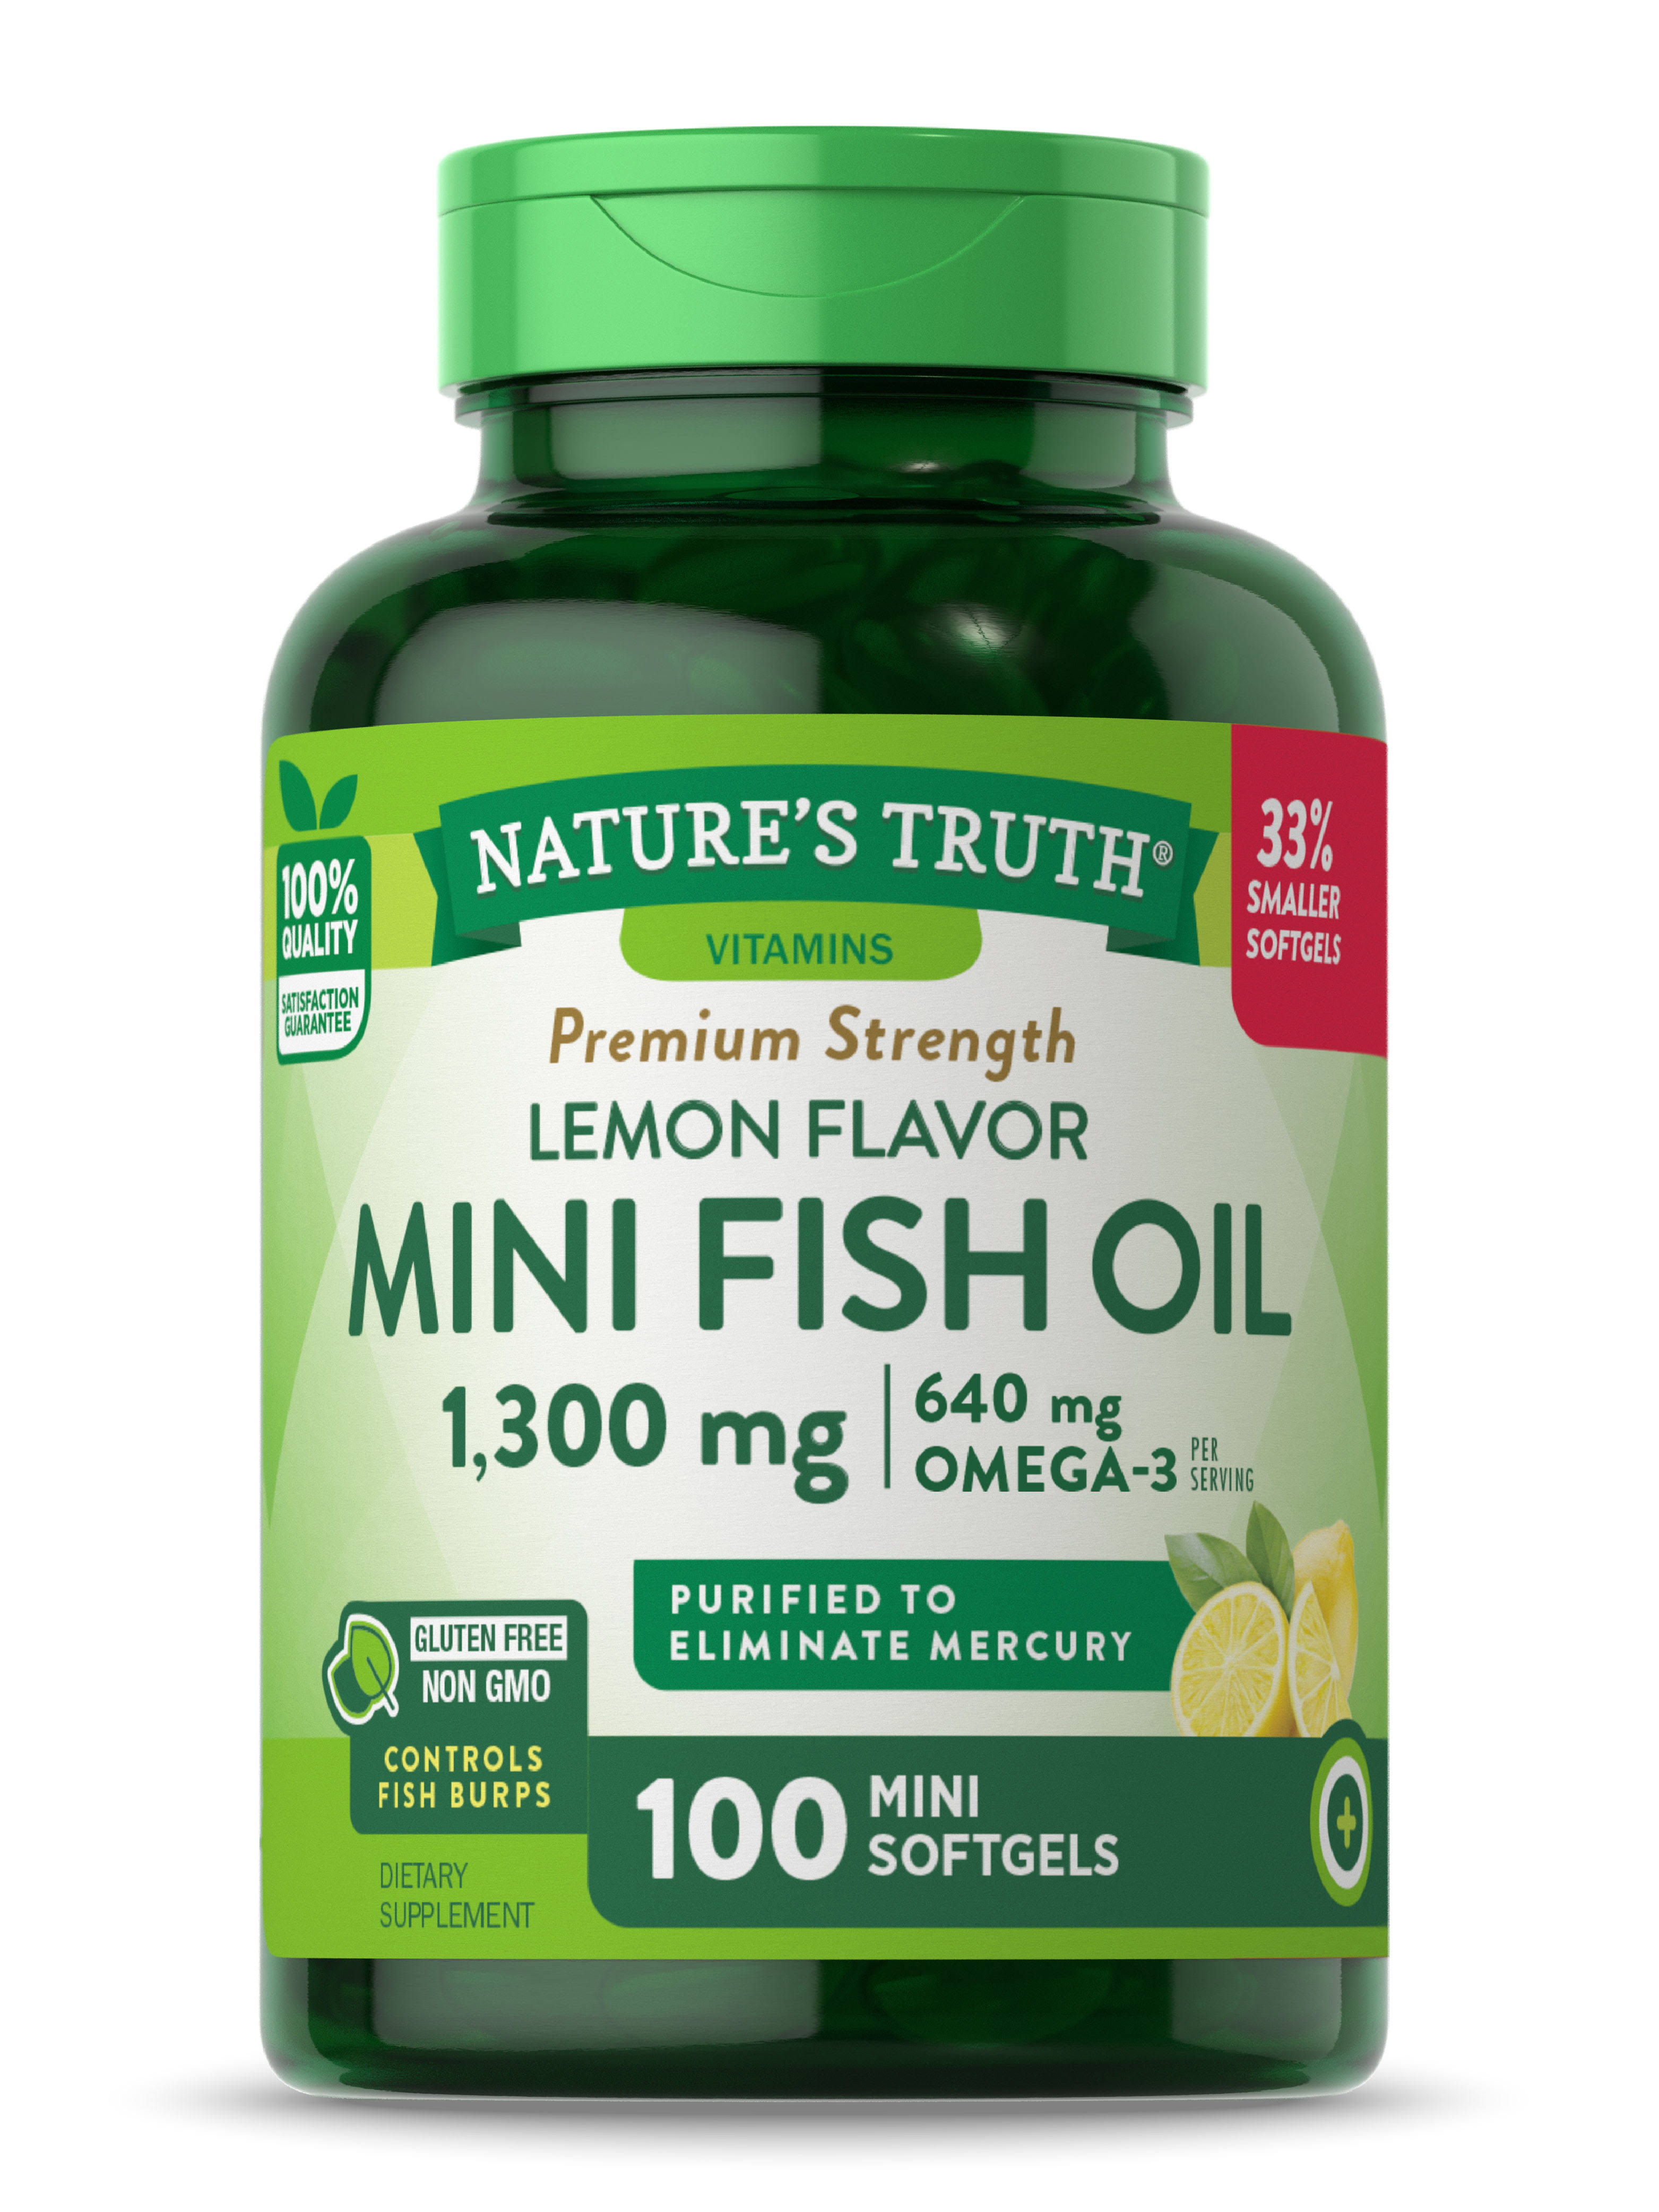 Nature's Truth Mini Fish Oil Omega 3 Supplement - Lemon, 100ct